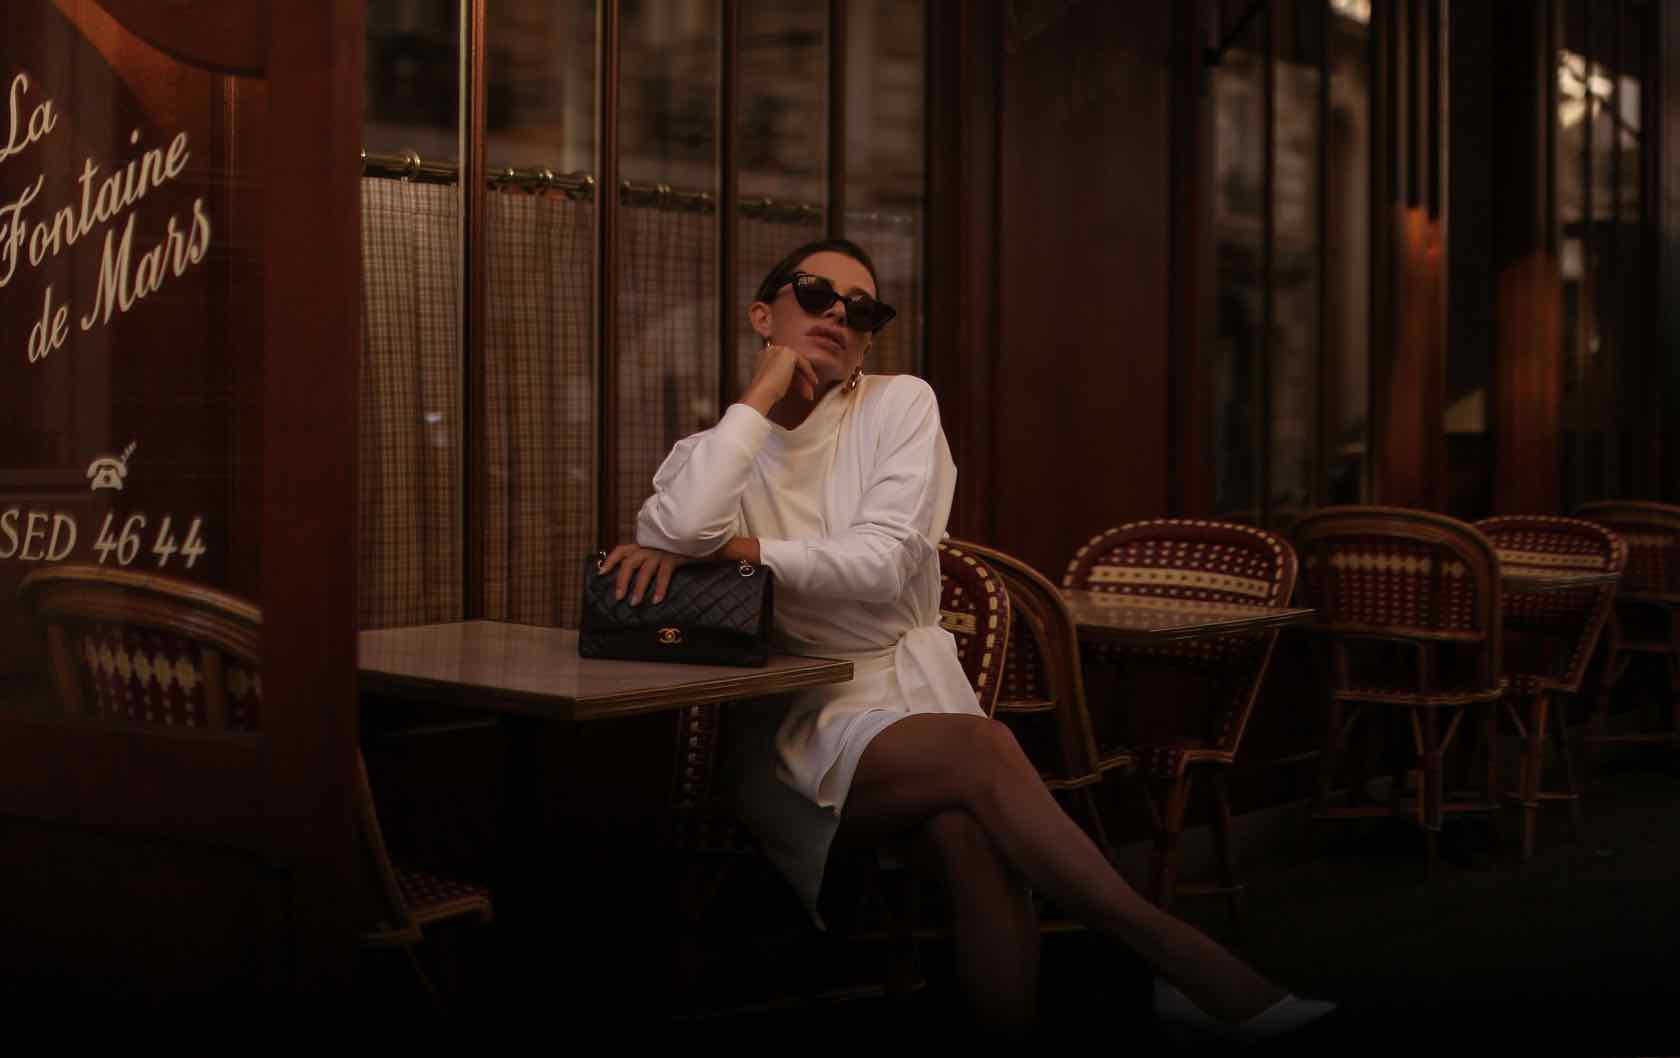 Woman at Paris cafe